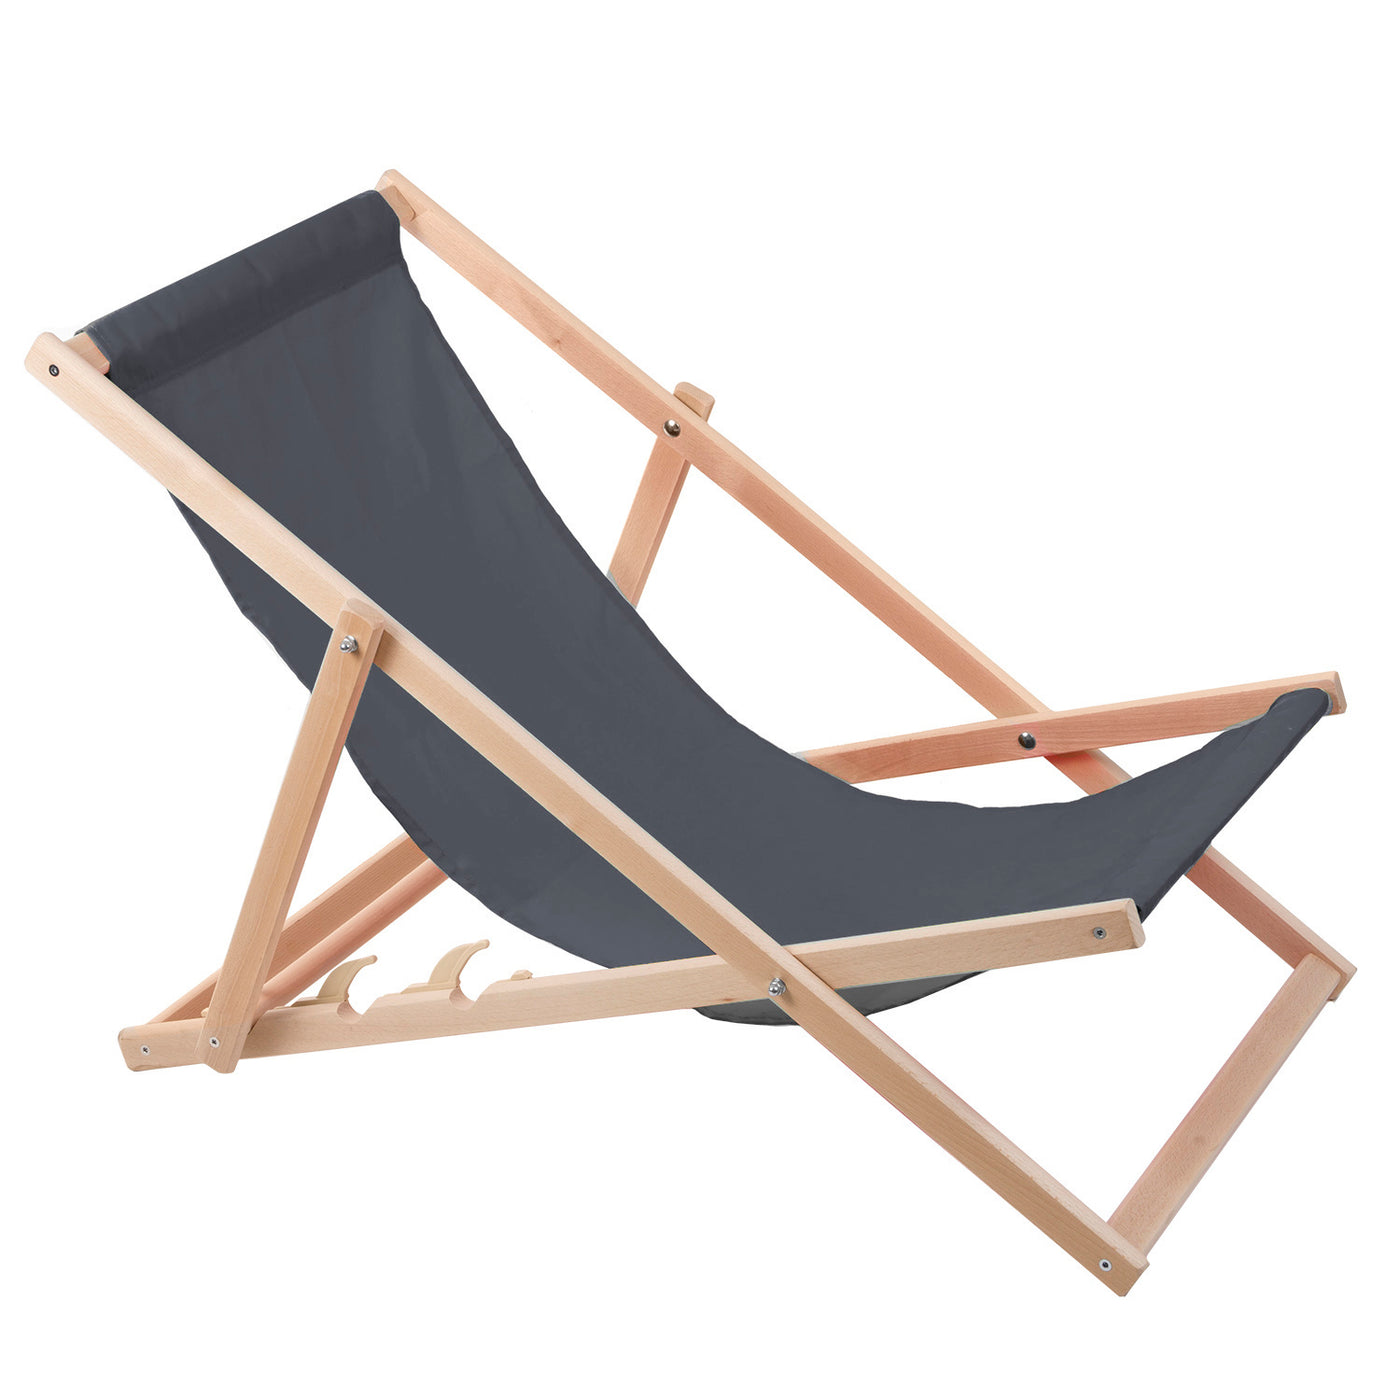 2 komfortowe leżaki z drewna w kolorze szarym, idealne na plażę, balkon, taras